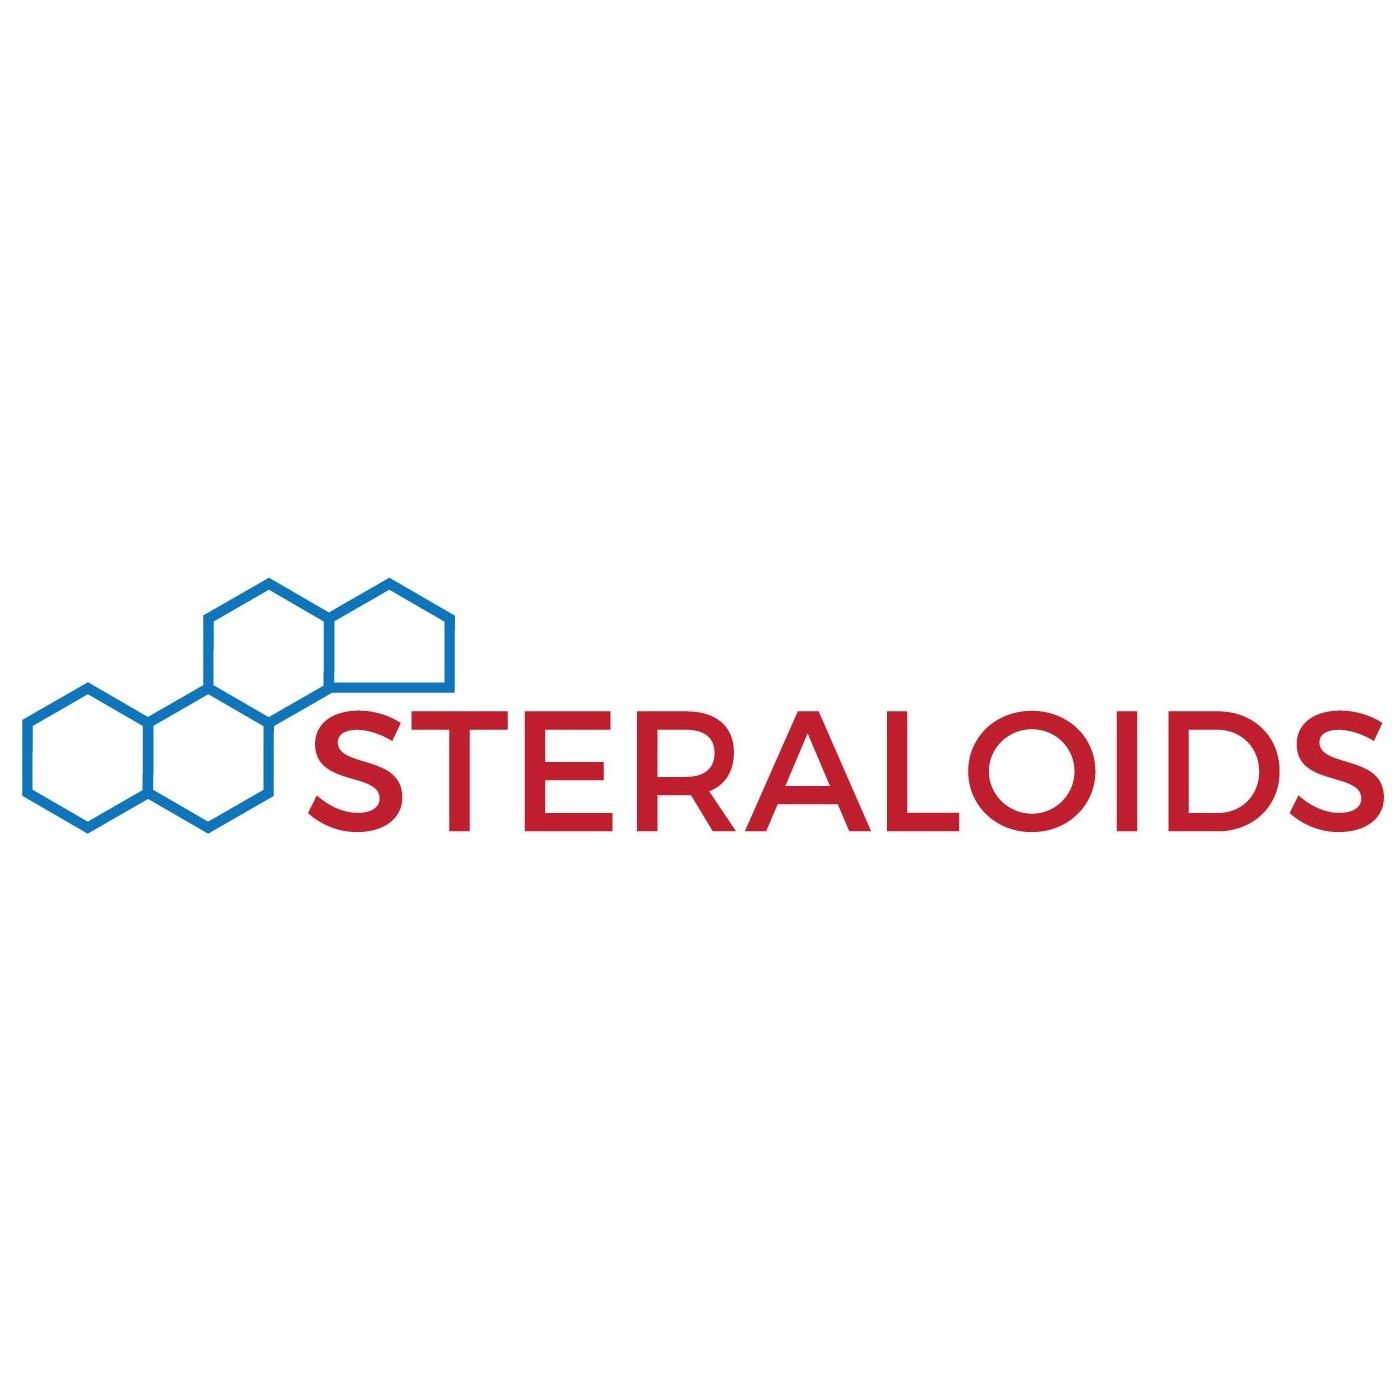 Steraloids雄激素、雌激素、胆甾、孕激素、胆汁酸、性激素及其衍生物与代谢物